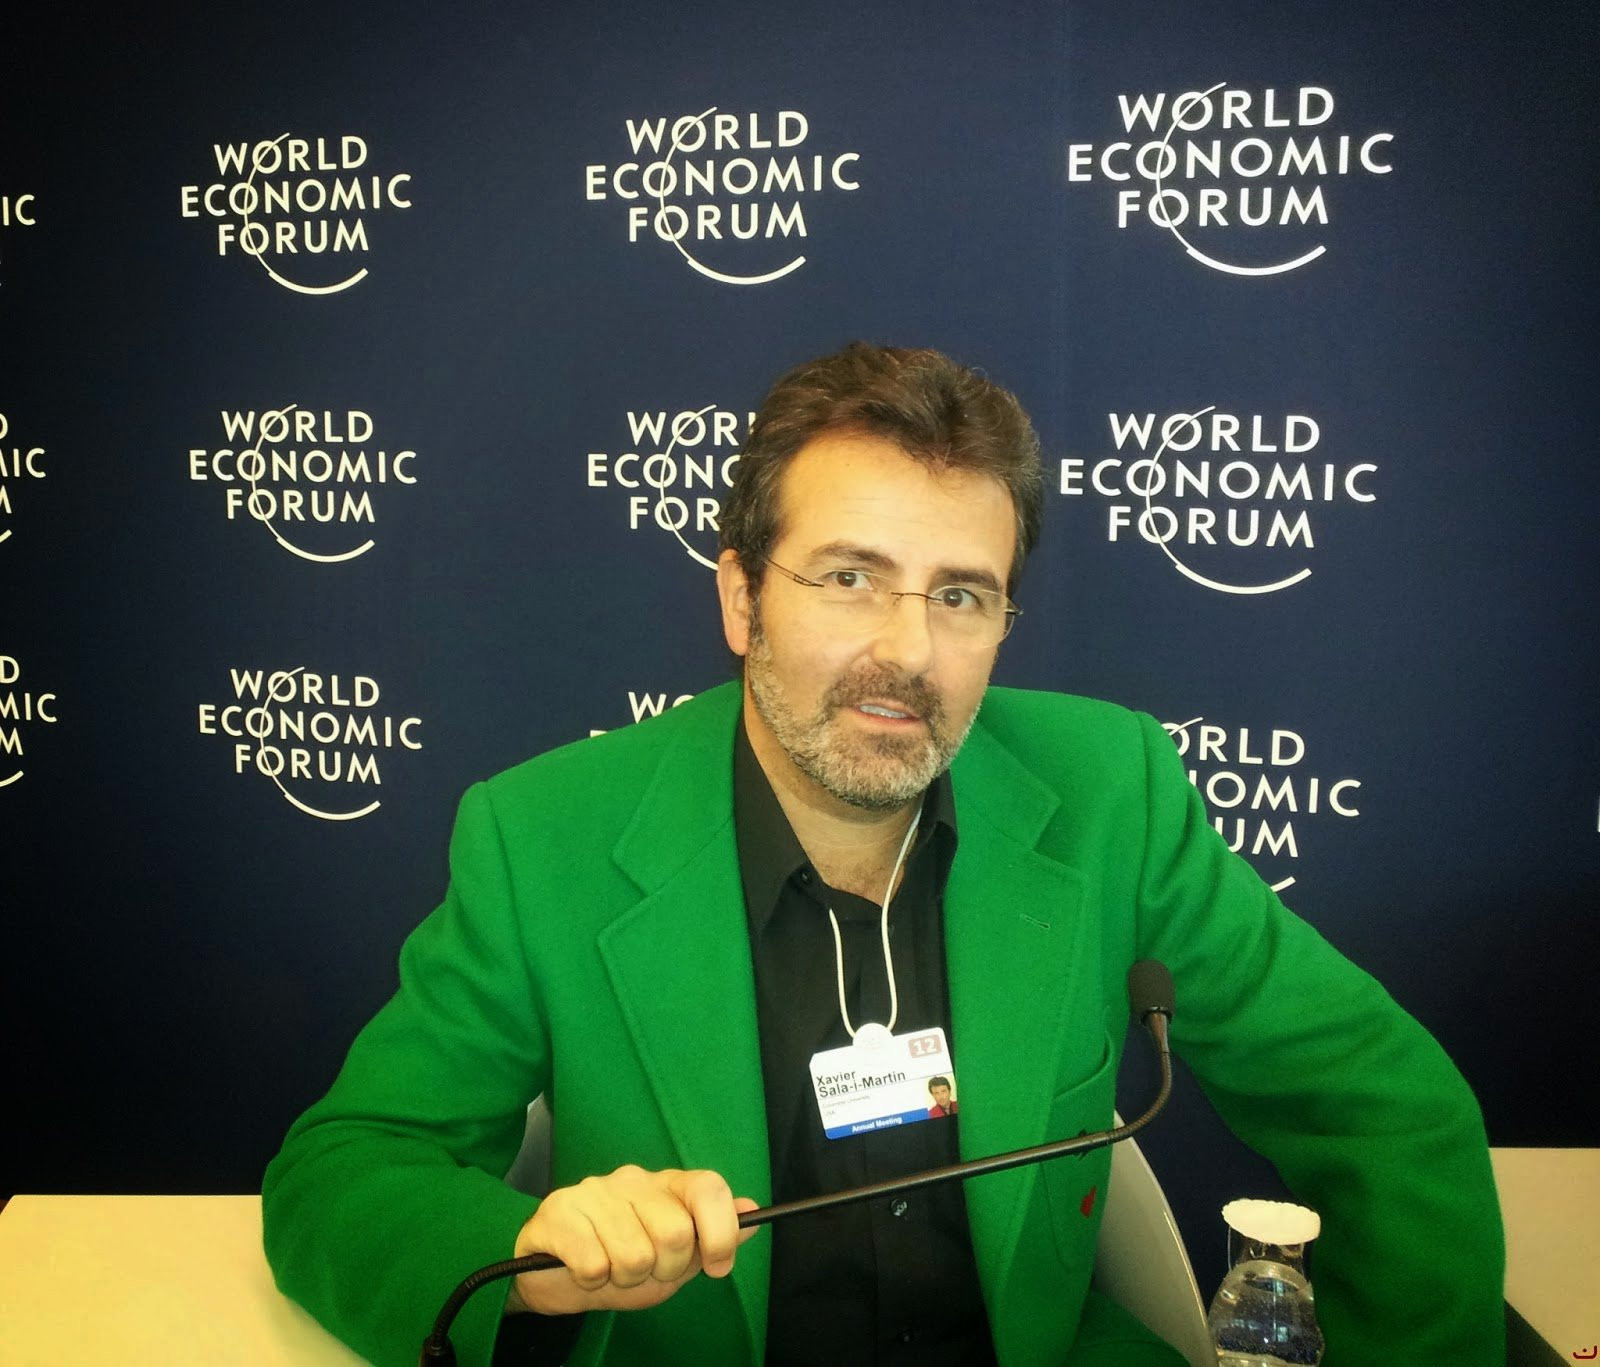 Imagen del economista Xavier Sala i Martín en el World Economic Forum / CG